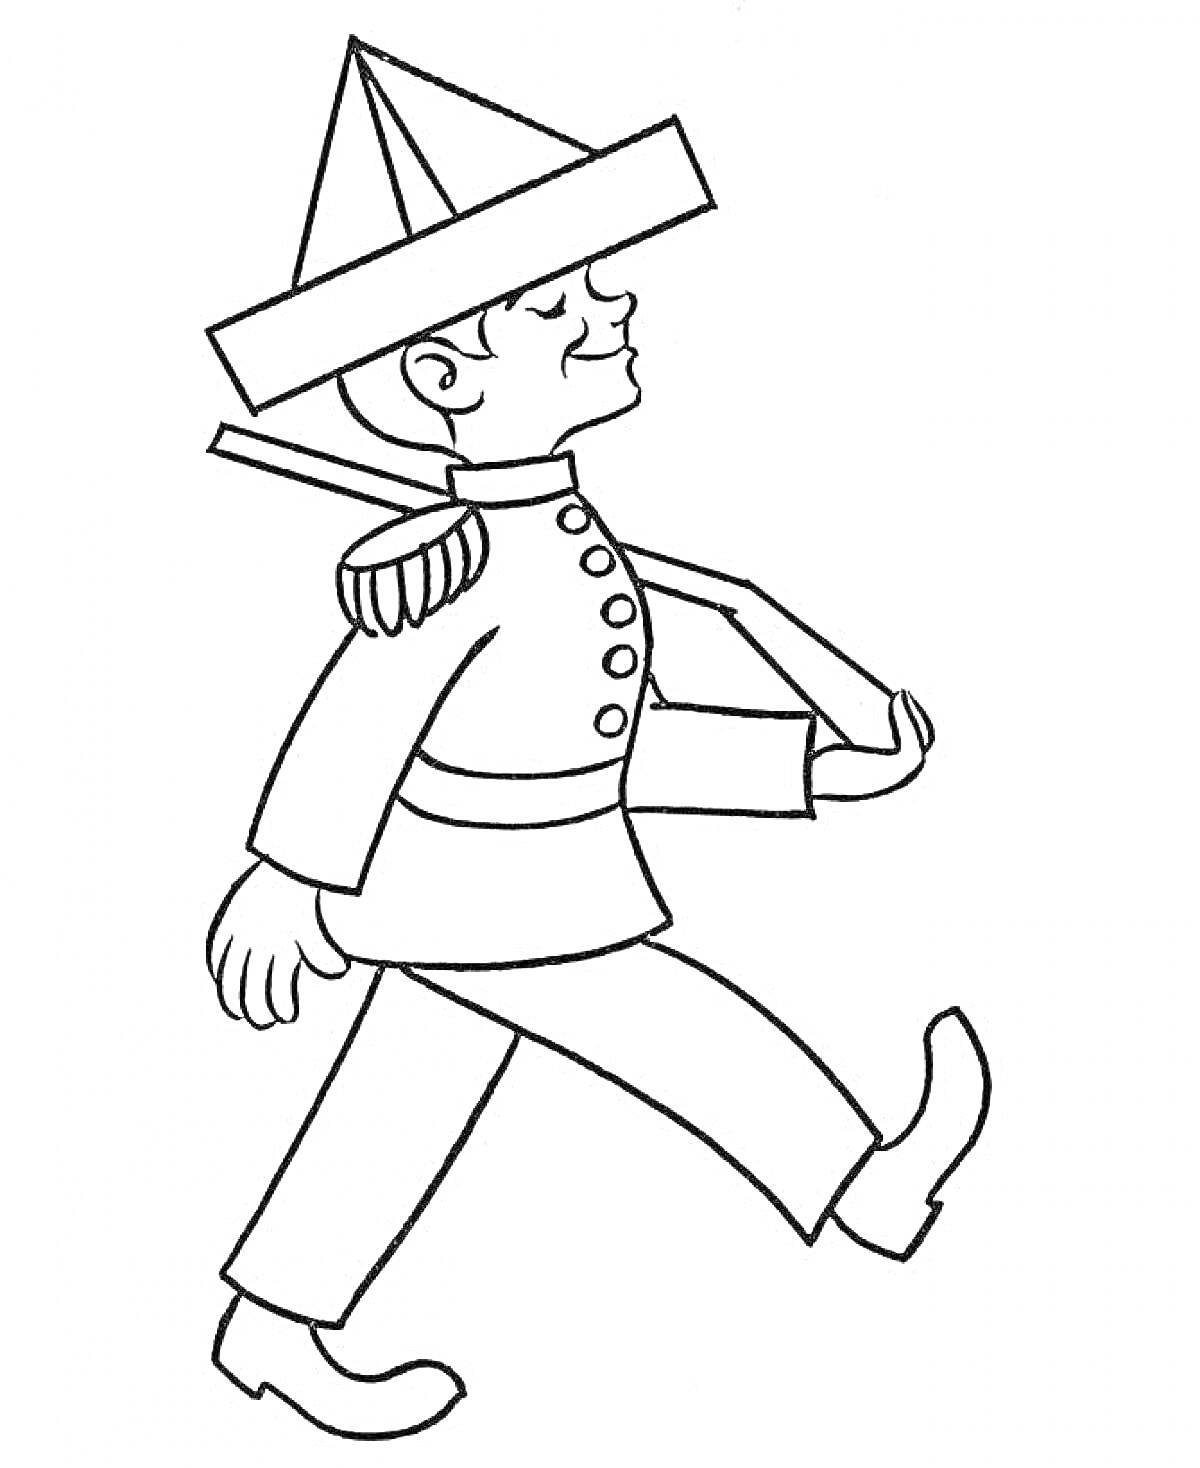 Солдатик в треуголке с наплечником и ремнем, марширующий с палкой